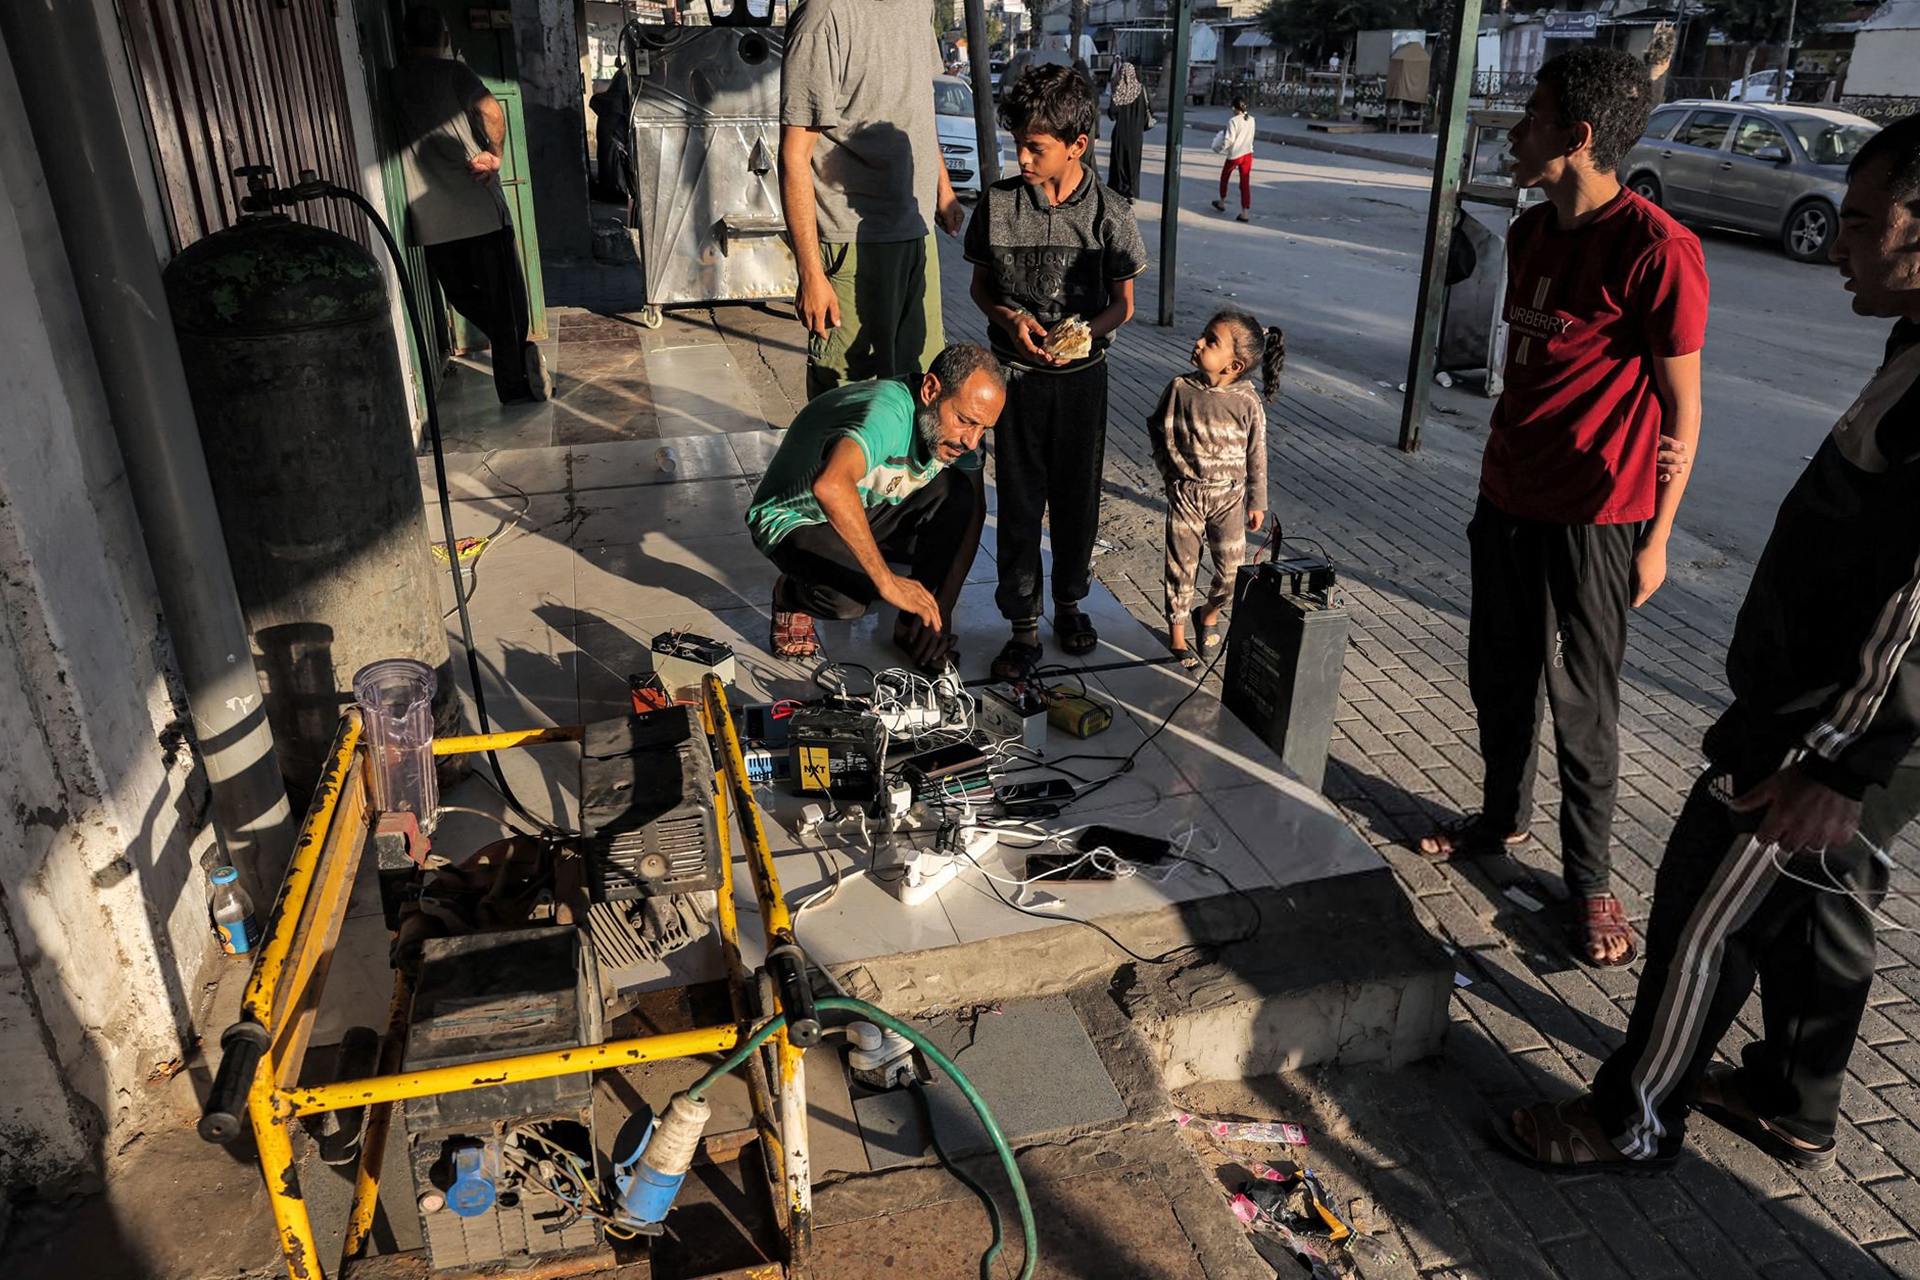 عودة جزئية لخدمات الاتصالات إلى غزة بعد توفير كمية وقود محدودة | أخبار – البوكس نيوز